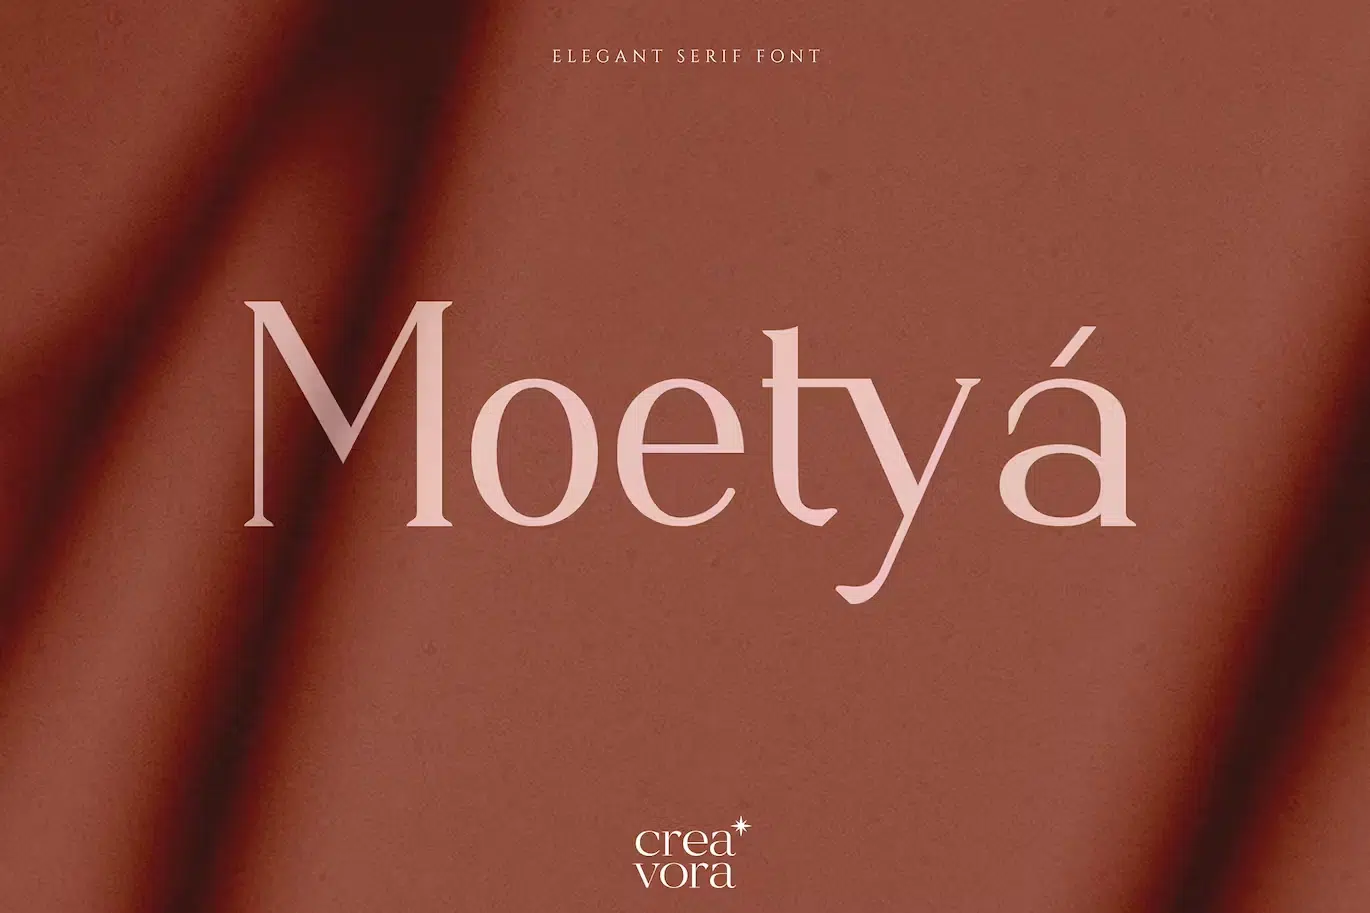 Moetya Font Similar To Garamond